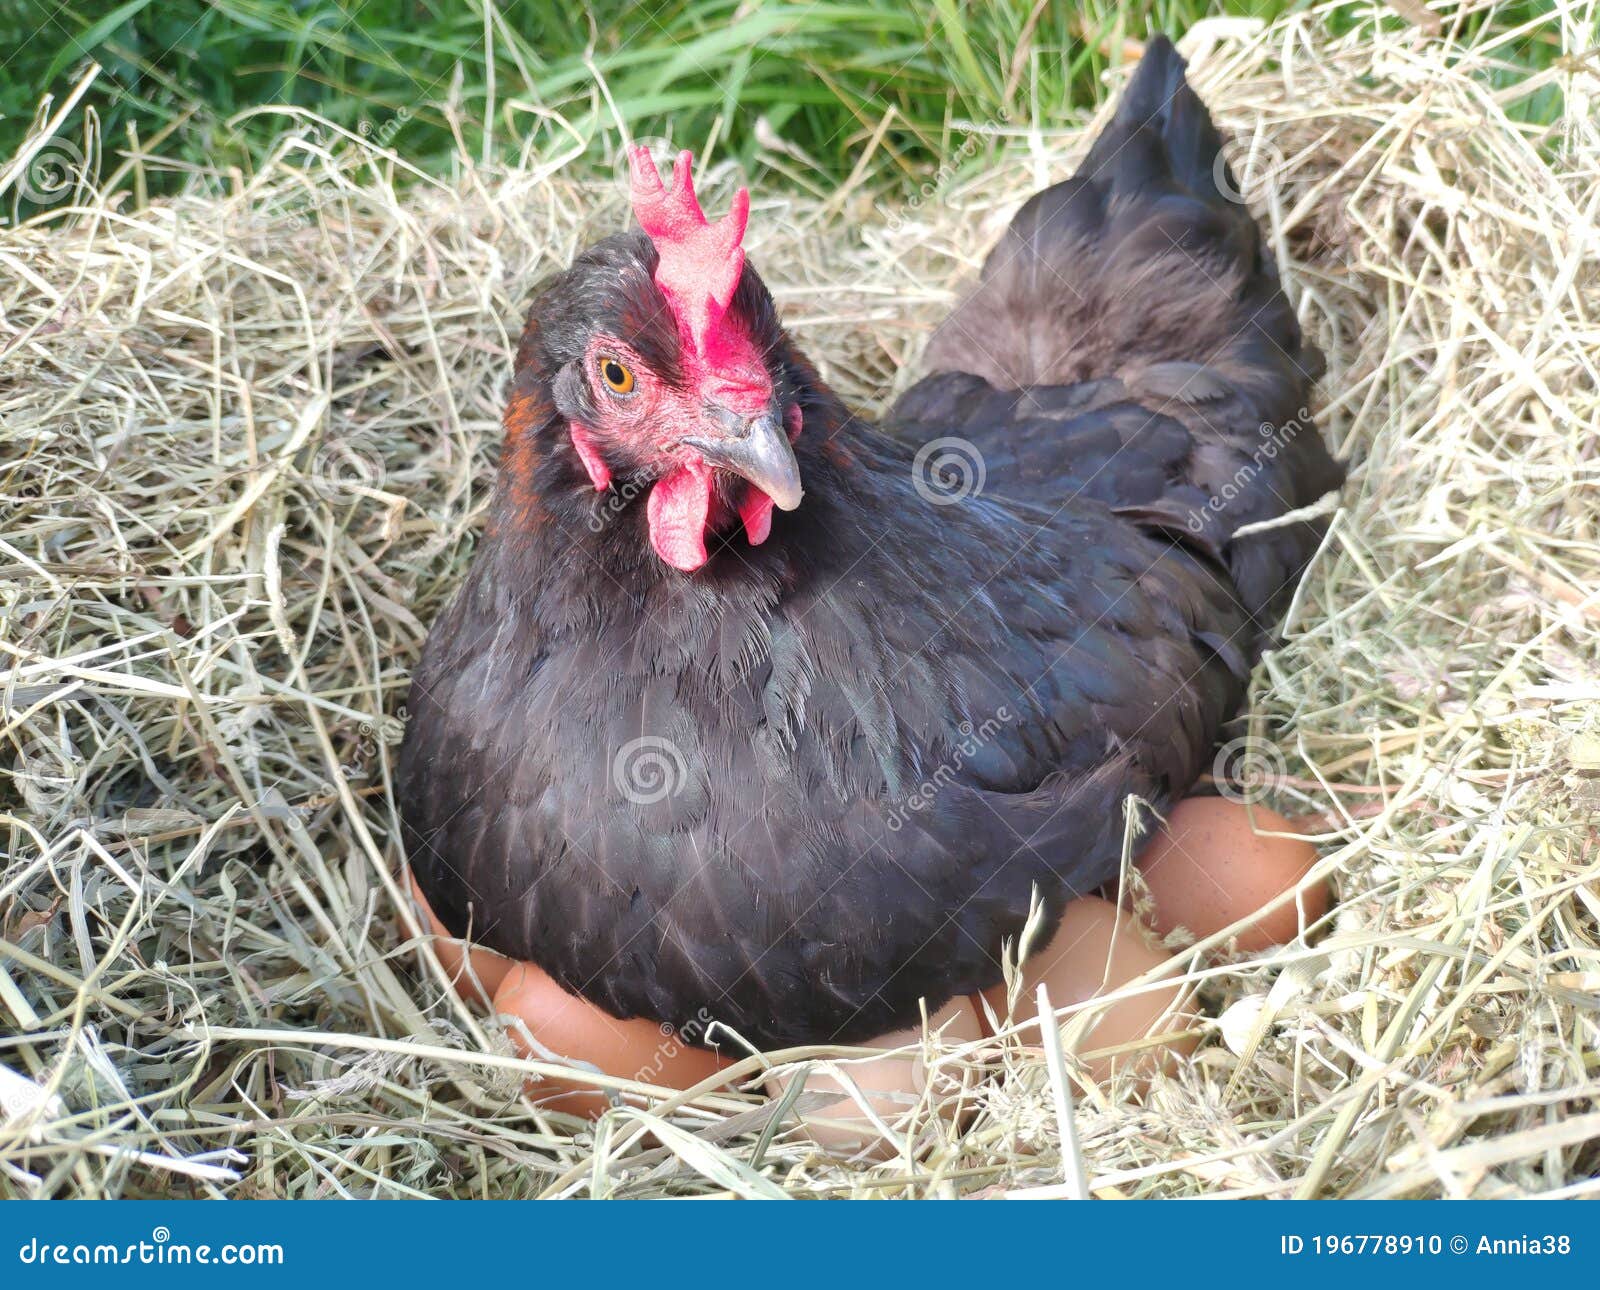 Tarief Heb geleerd Tijdens ~ De Kippen Broeden Het Ei in Een Nest. Zwarte Kip Op Een Nest Droog Gras  Stock Foto - Image of broedsel, voedsel: 196778910